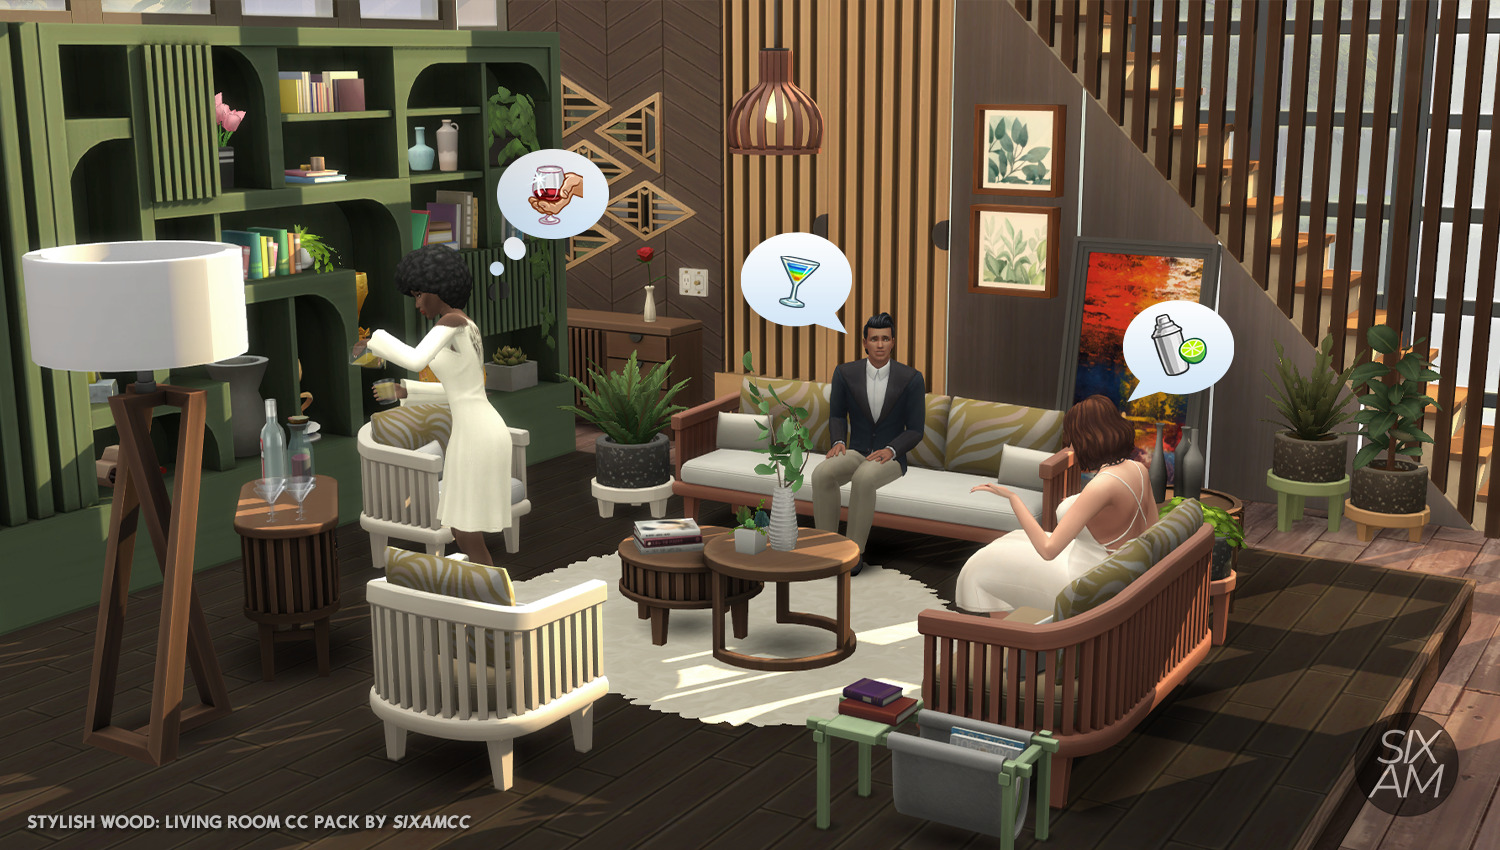 The Sims 4 Estilo Madeira - Sala de Estar é Lançado Gratuitamente